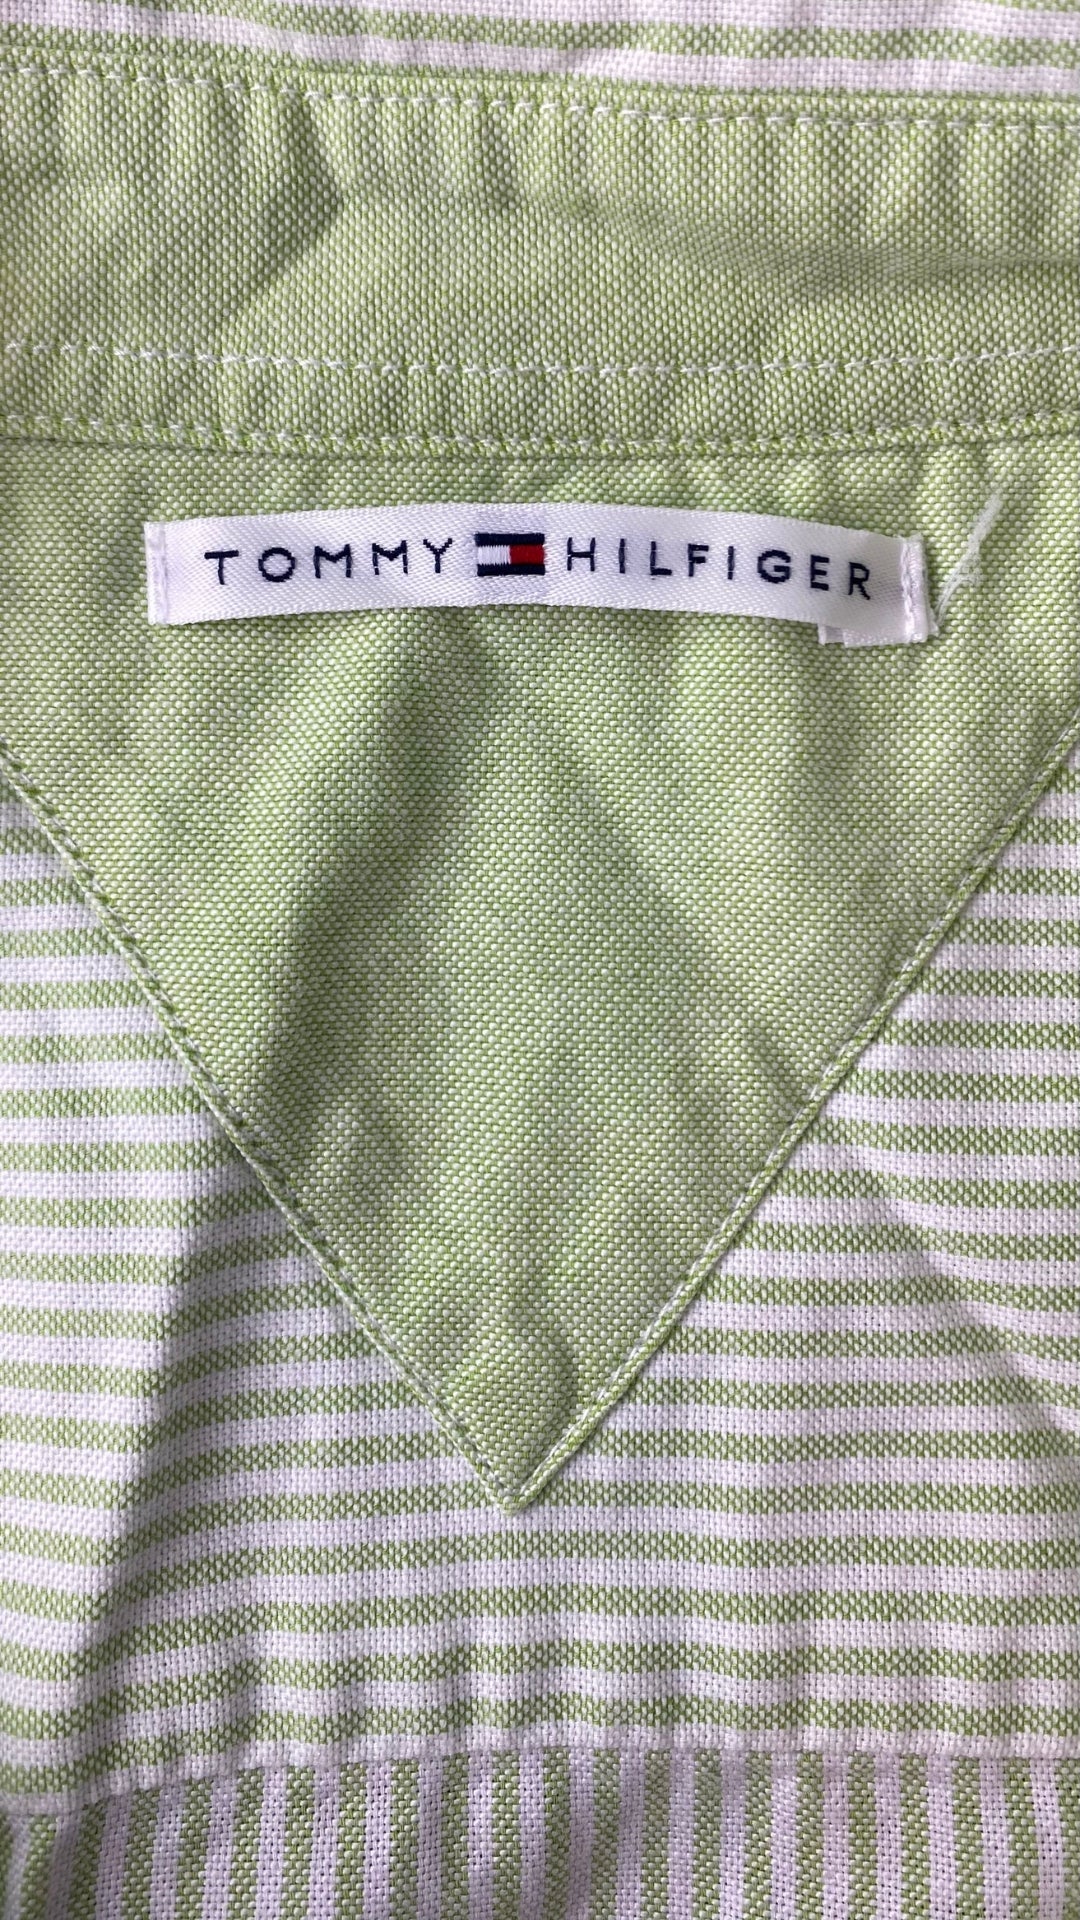 Chemisier à rayures vert et crème Tommy Hilfiger, taille m-l. Vue de l'étiquette de marque.